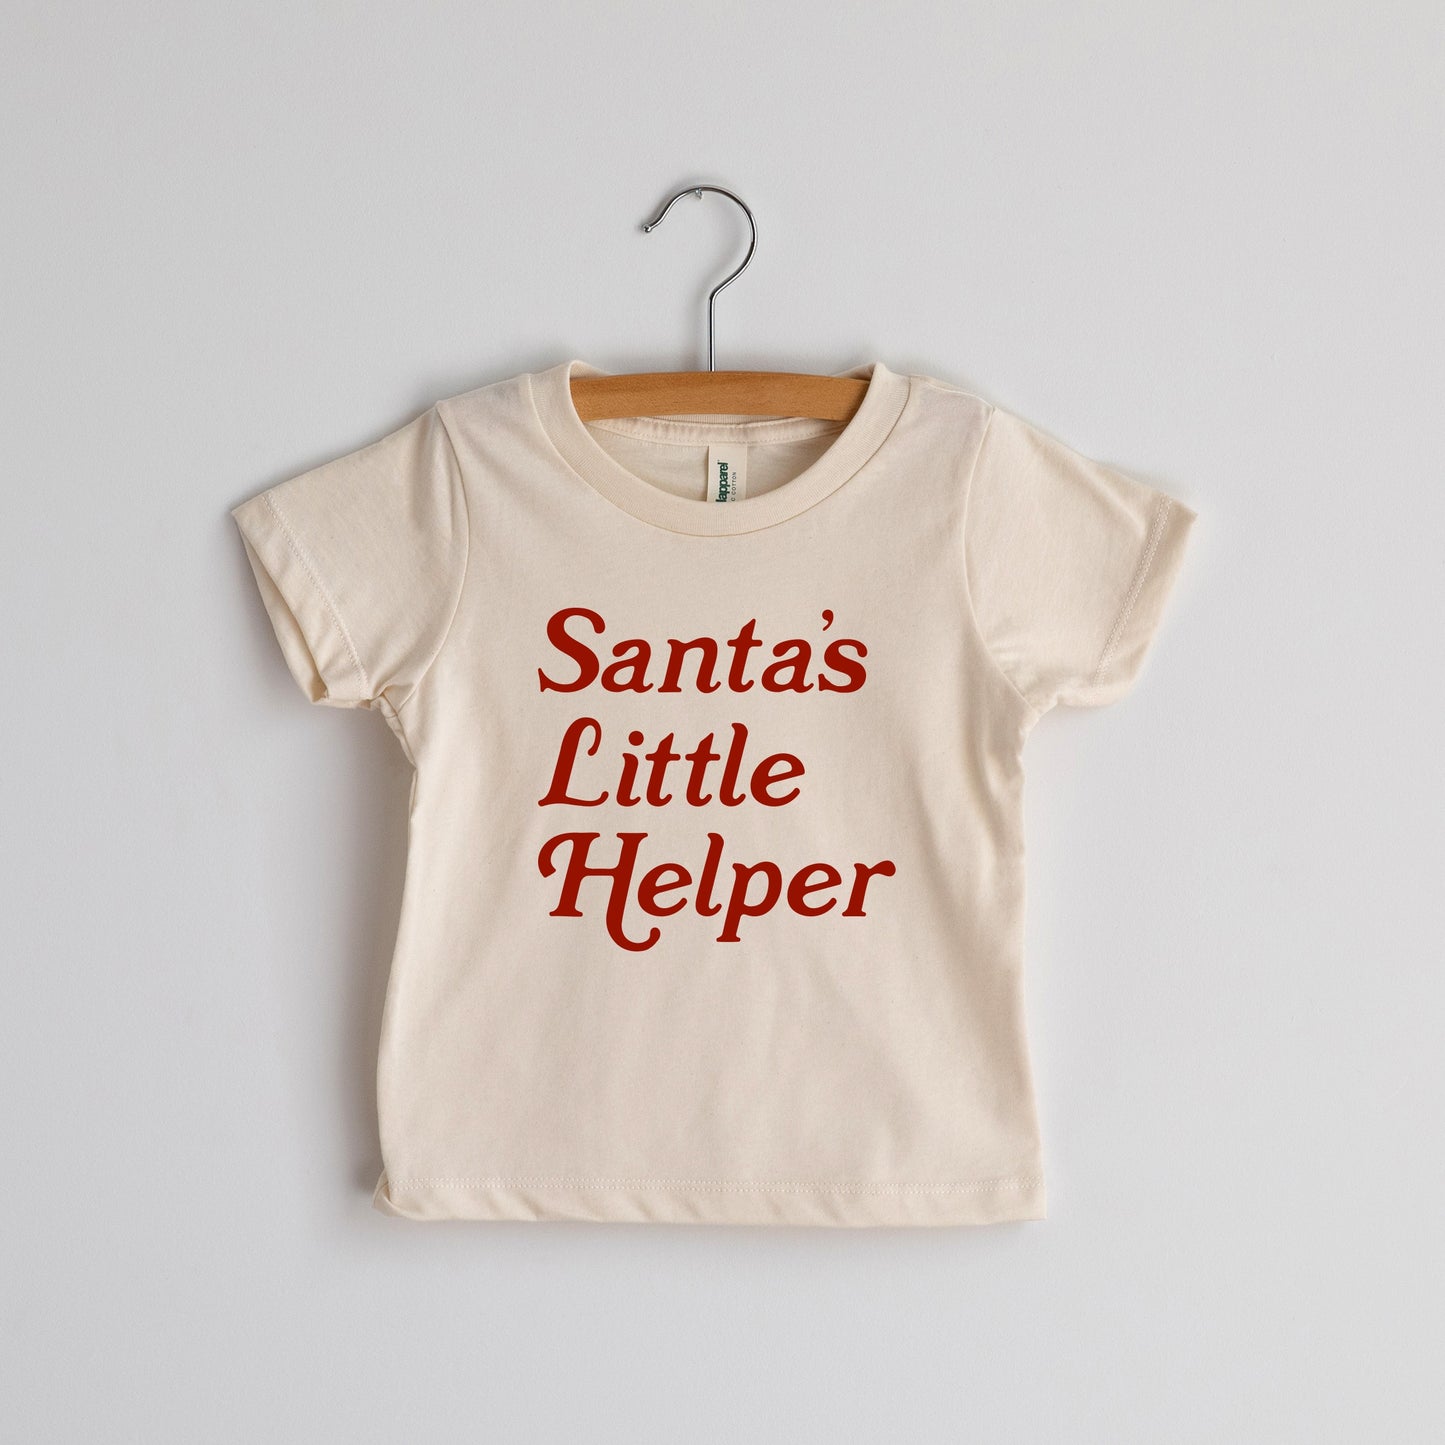 Santa's Little Helper Tee